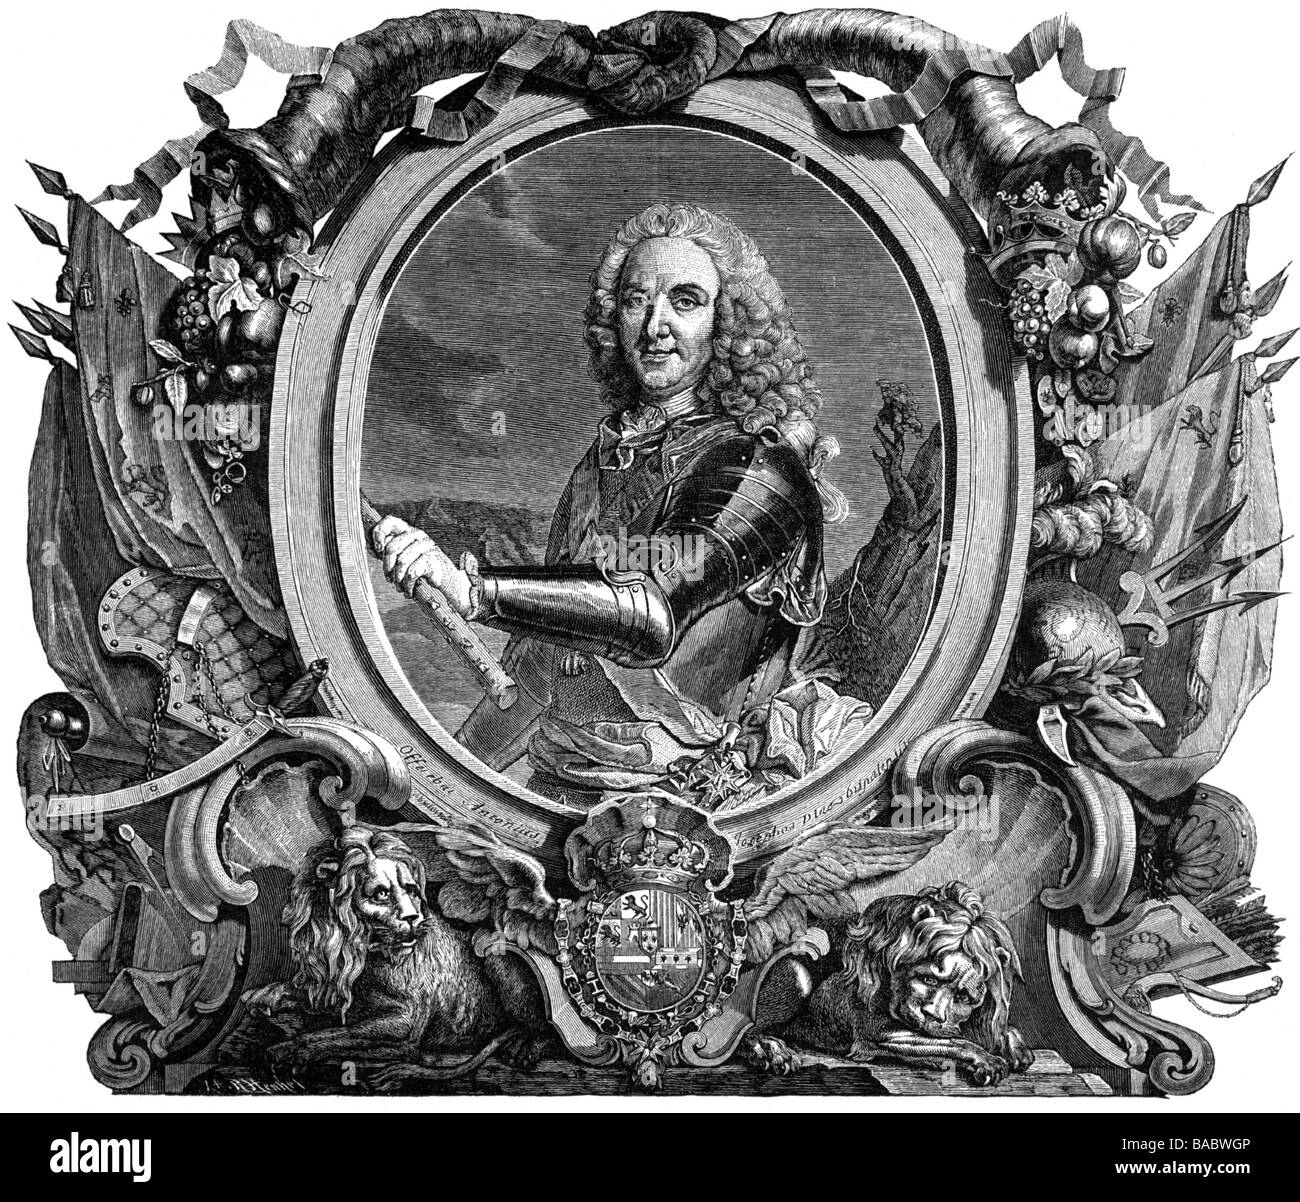 Philippe V, 19.12.1683 - 9.7.1746, roi d'Espagne 24.11.1700 - 9.7.1746, demi-longueur, gravure sur cuivre par G. F. Schmidt et J.G. Wille après peinture ny Louis Michel van Loo (1707 - 1771), auteur de l'artiste , n'a pas à être effacée Banque D'Images